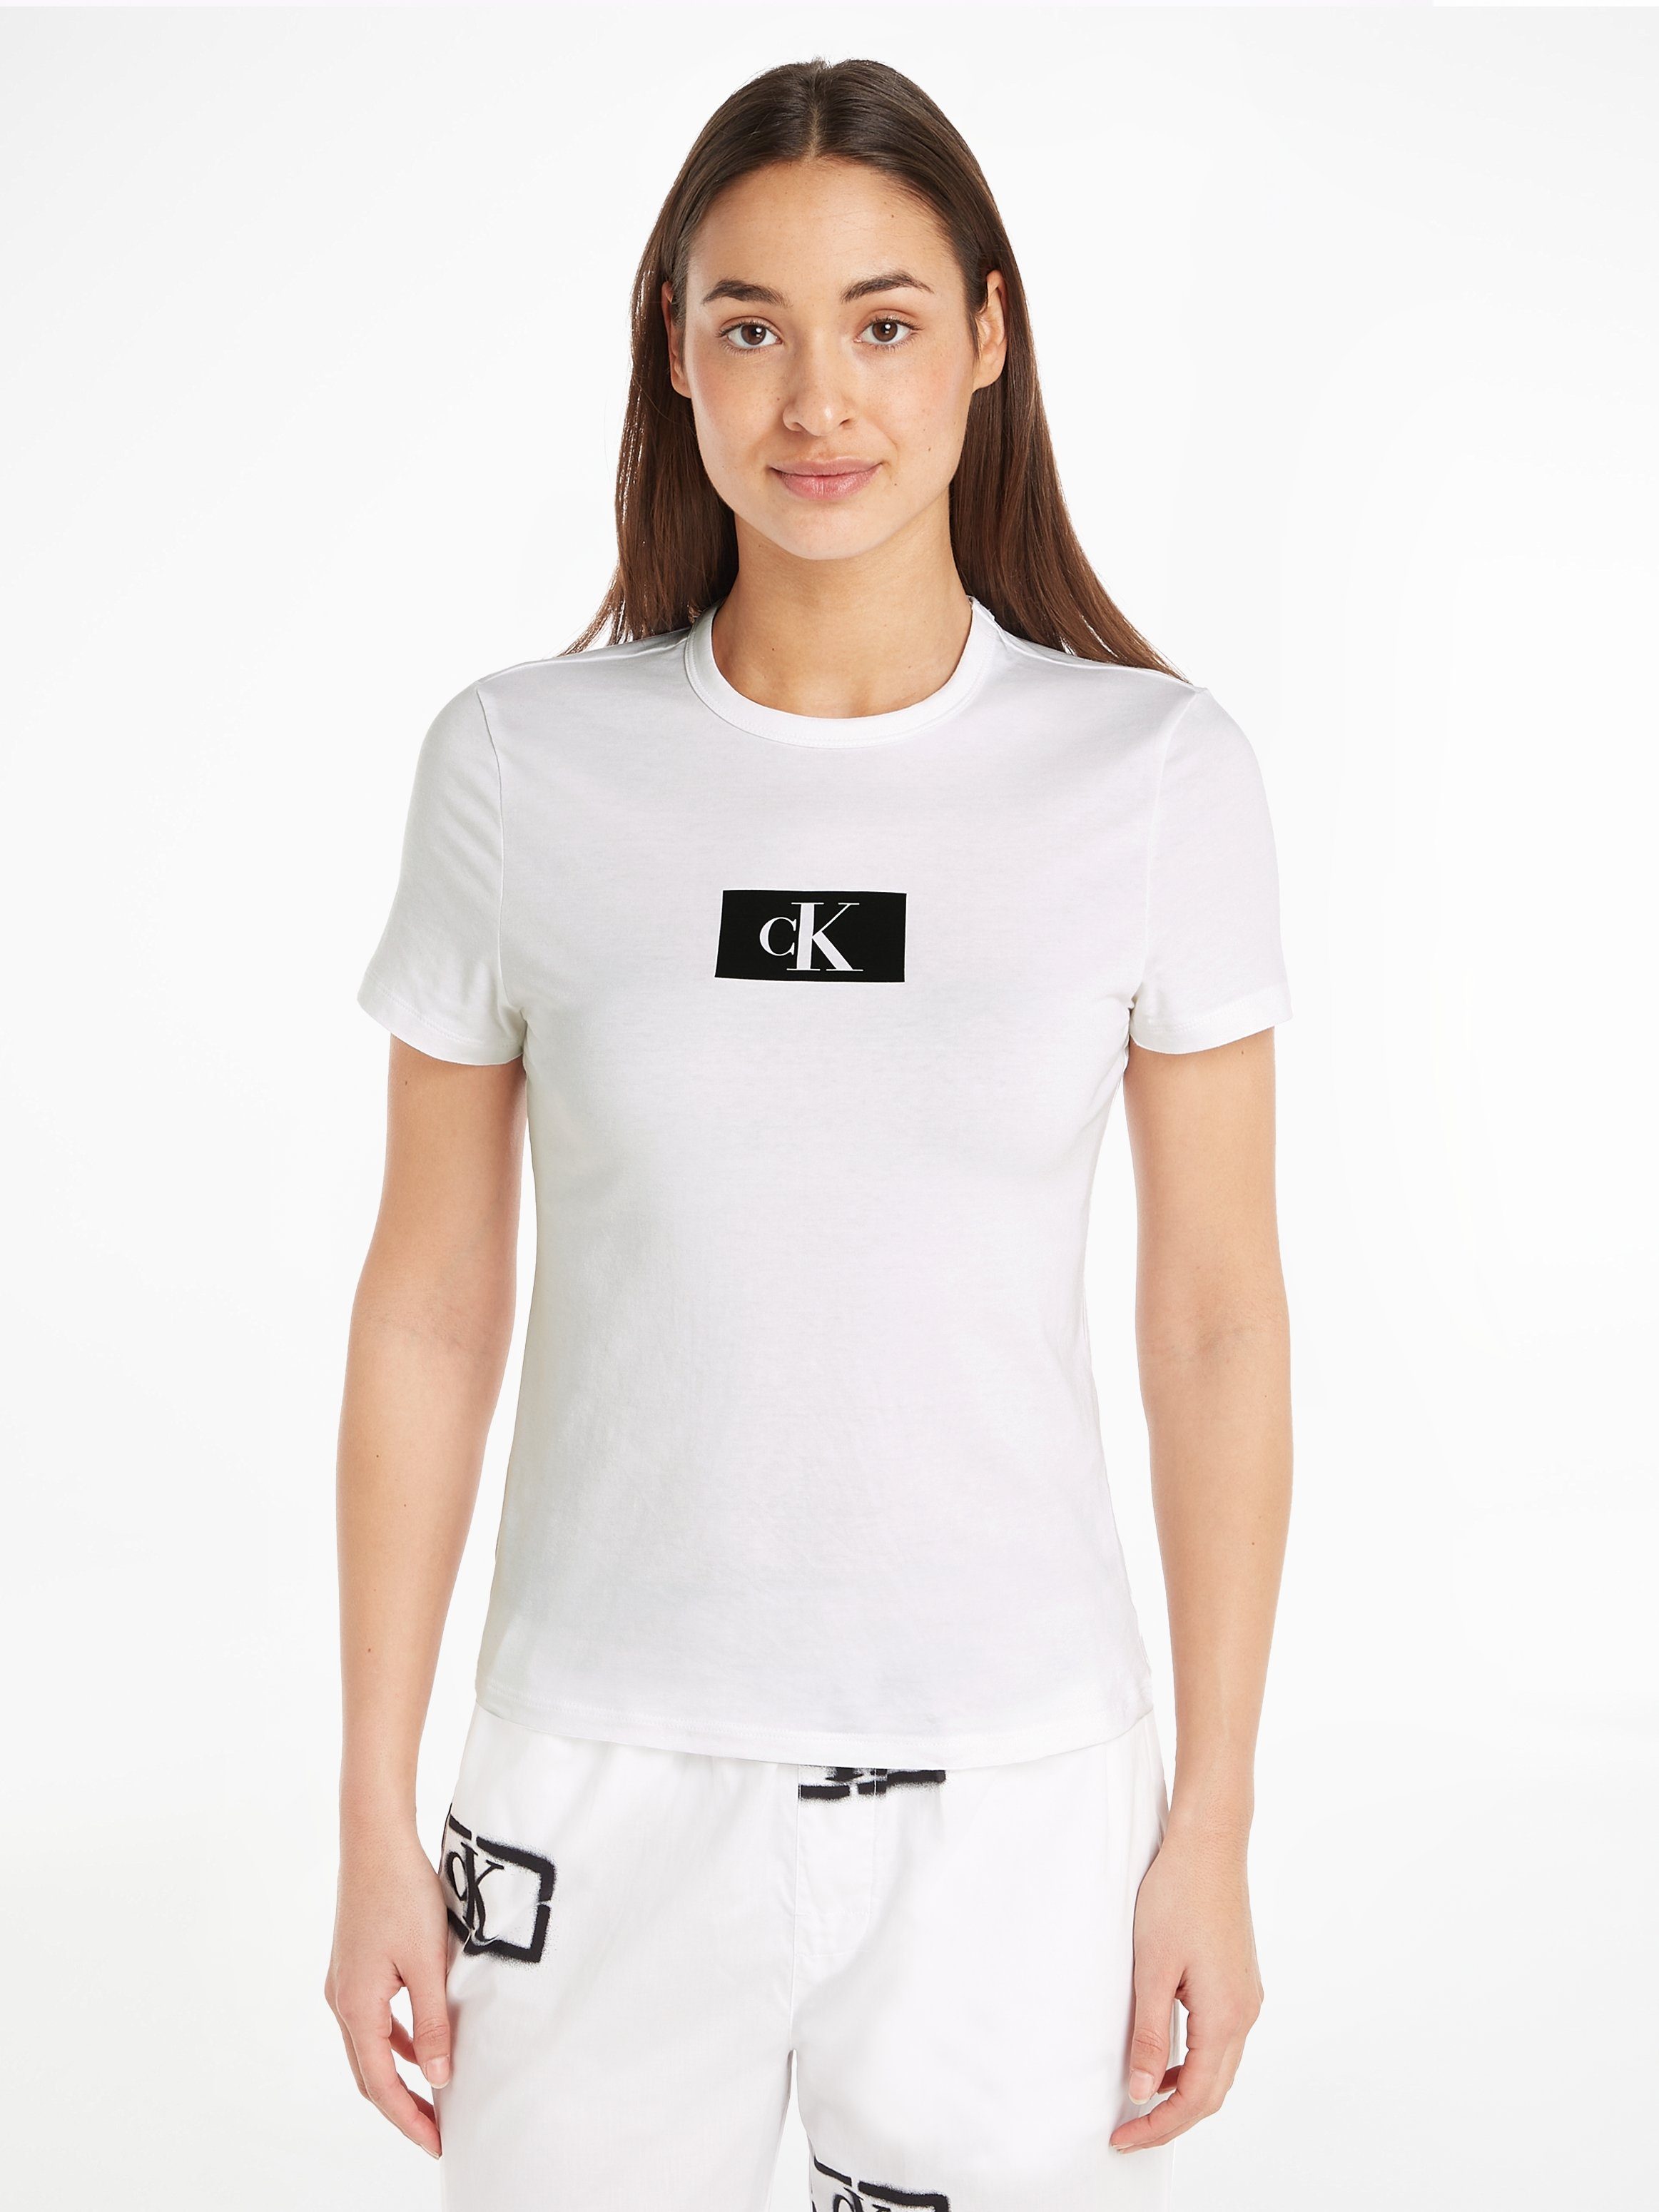 WHITE Calvin Klein CREW S/S Kurzarmshirt NECK Underwear